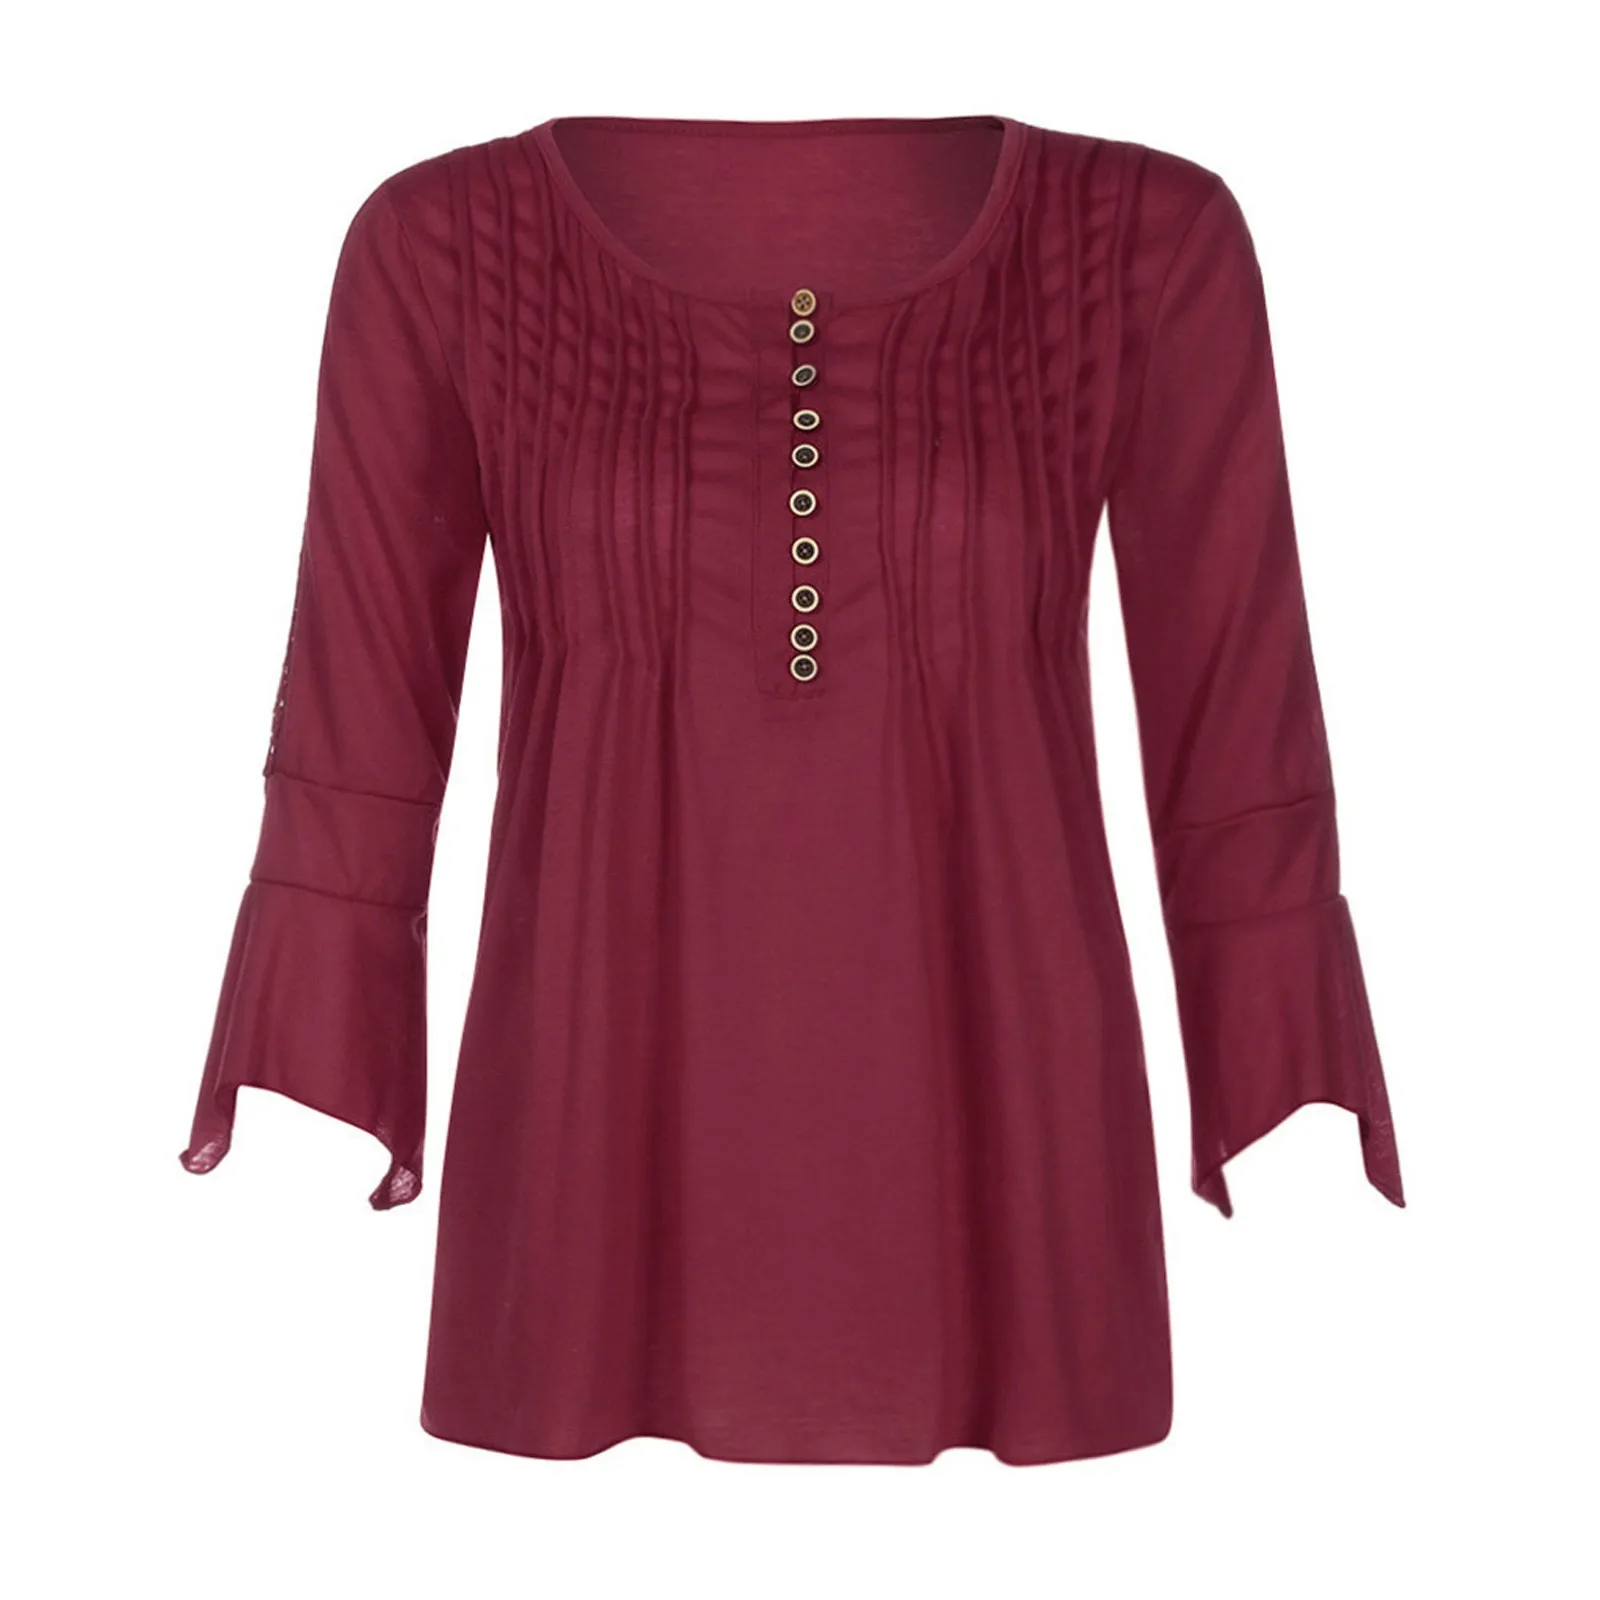 

Женская блузка с рукавом три четверти, Тонкая блузка на пуговицах с V-образным вырезом, рубашка для ношения одежды слоями, футболки для женщи...